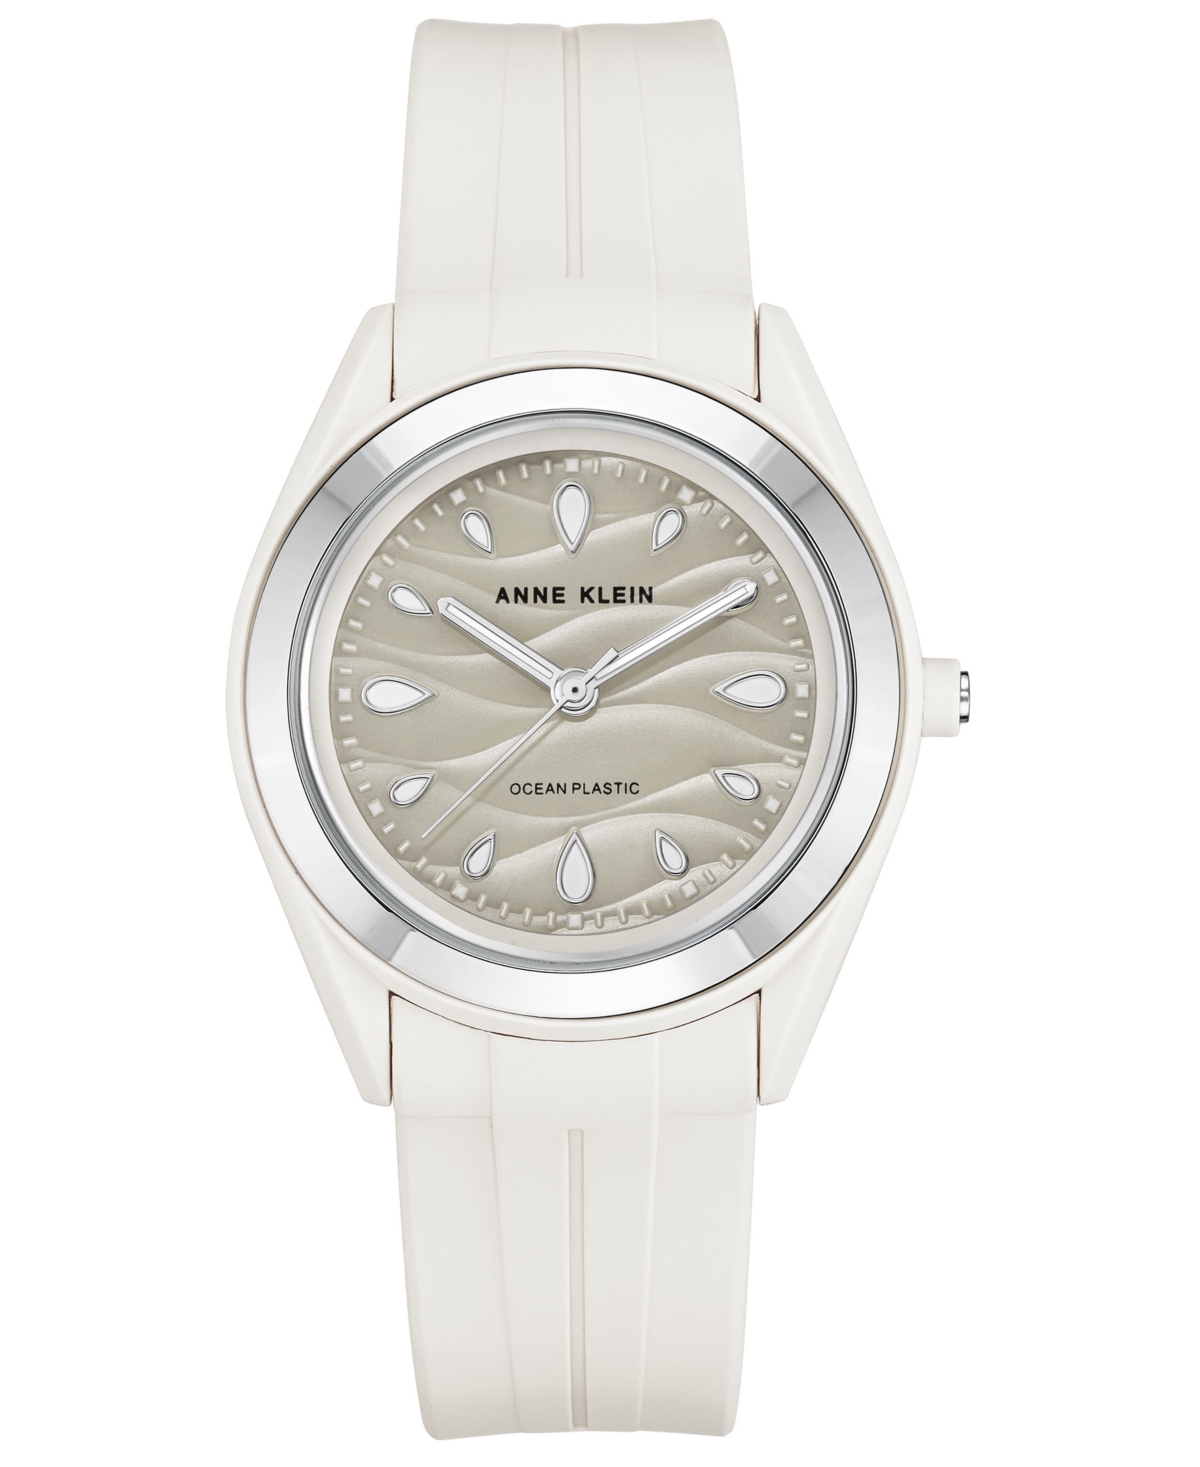 Anne Klein Women's White Solar Ocean Work Plastic Metal Watch, 38.5mm